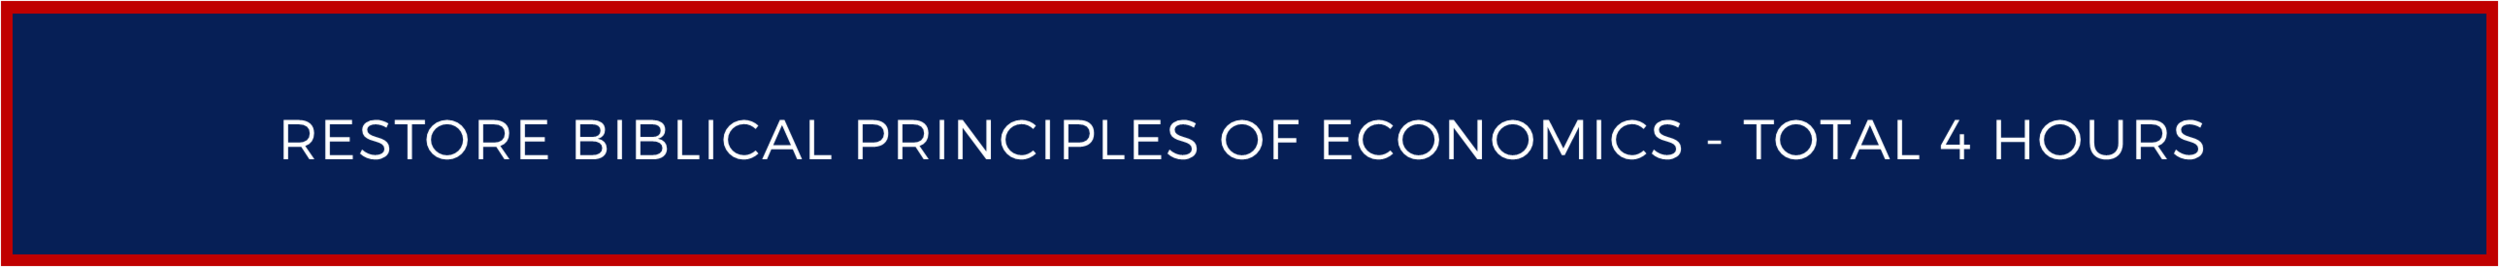 Restore Biblical Principles of Economics